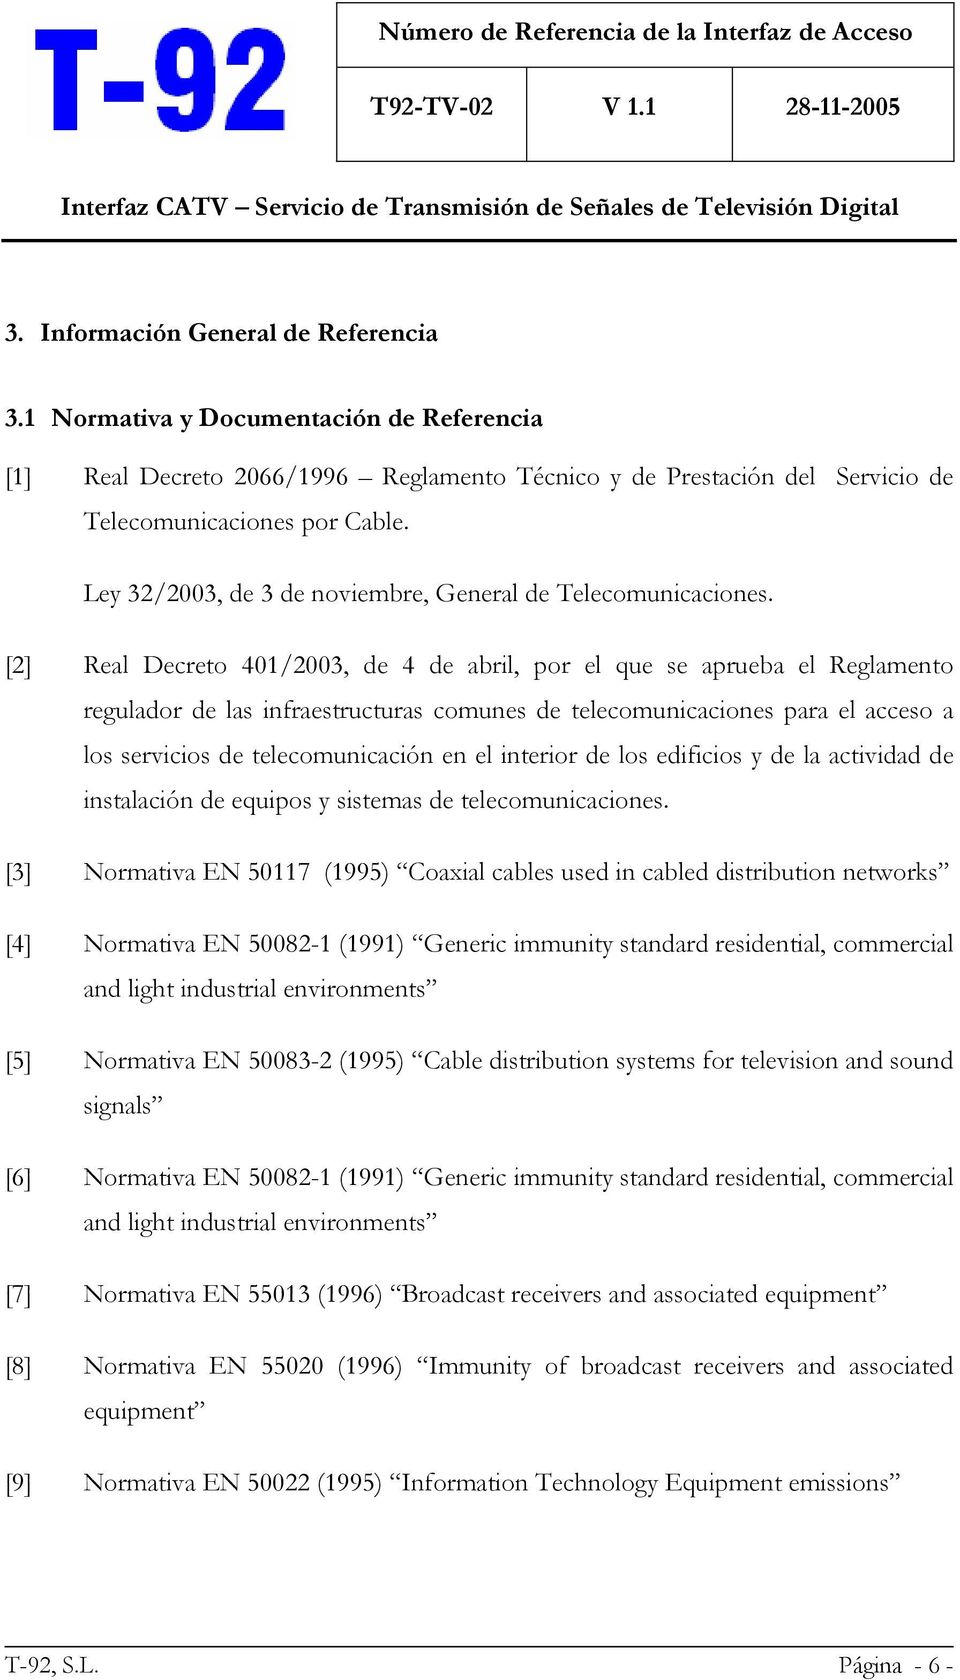 [2] Real Decreto 401/2003, de 4 de abril, por el que se aprueba el Reglamento regulador de las infraestructuras comunes de telecomunicaciones para el acceso a los servicios de telecomunicación en el